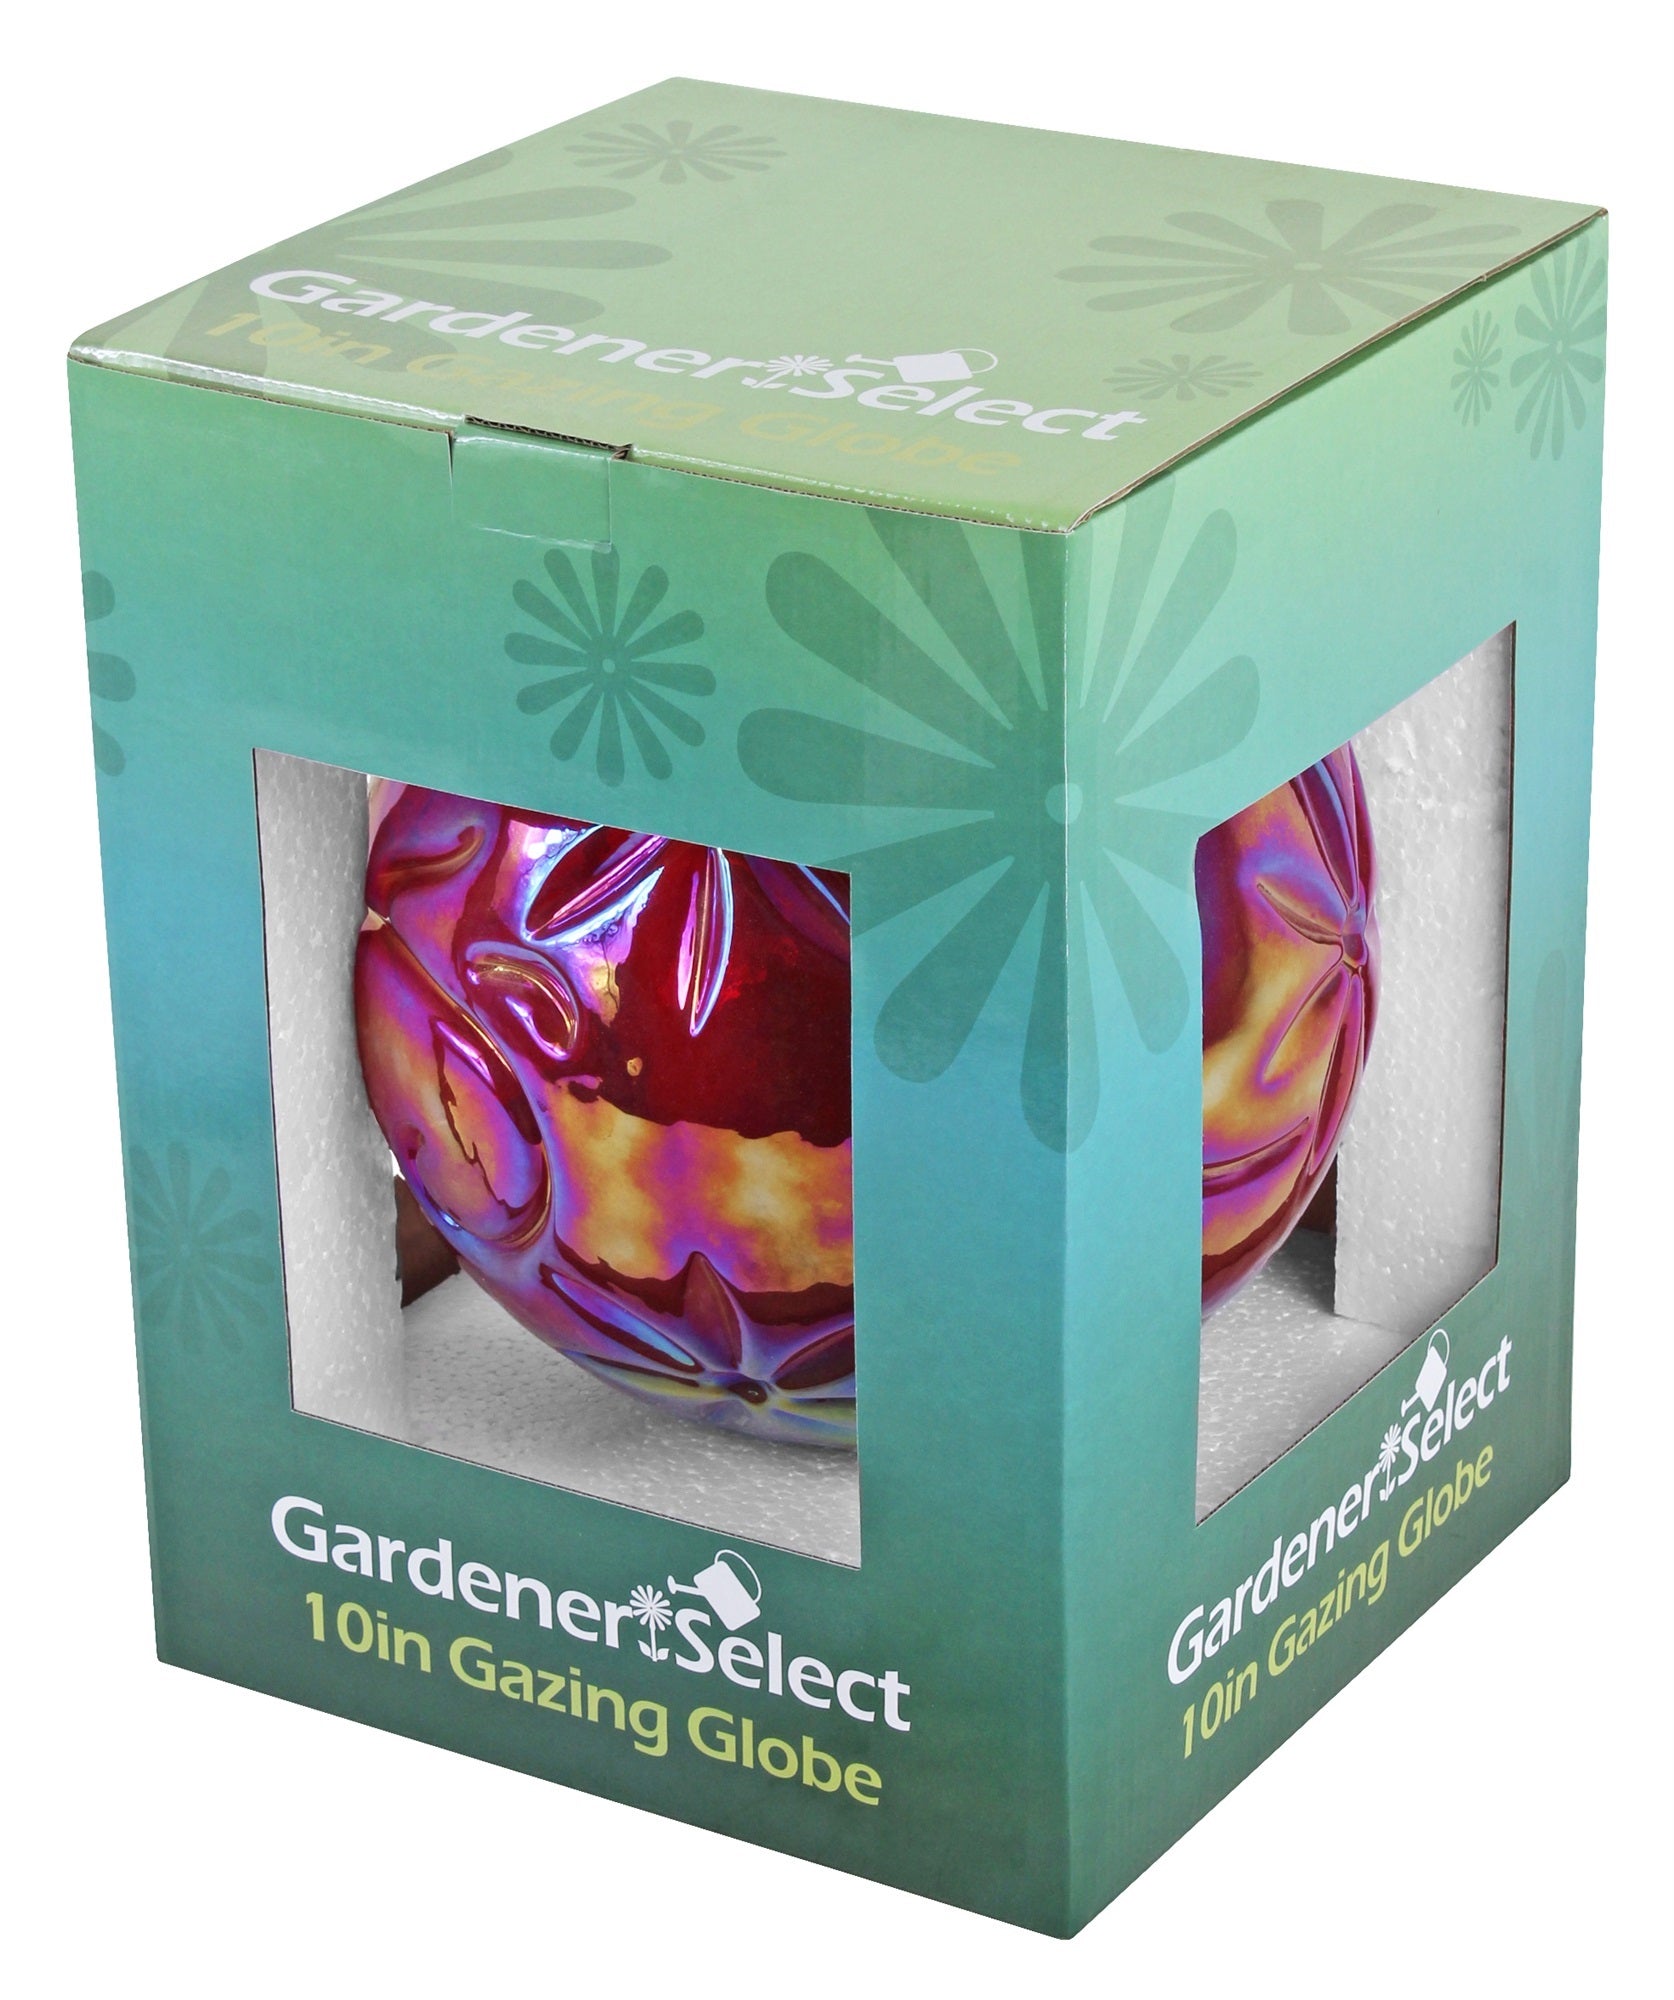 Gardener's Select Red Flower Glass Gazing Globe, 10